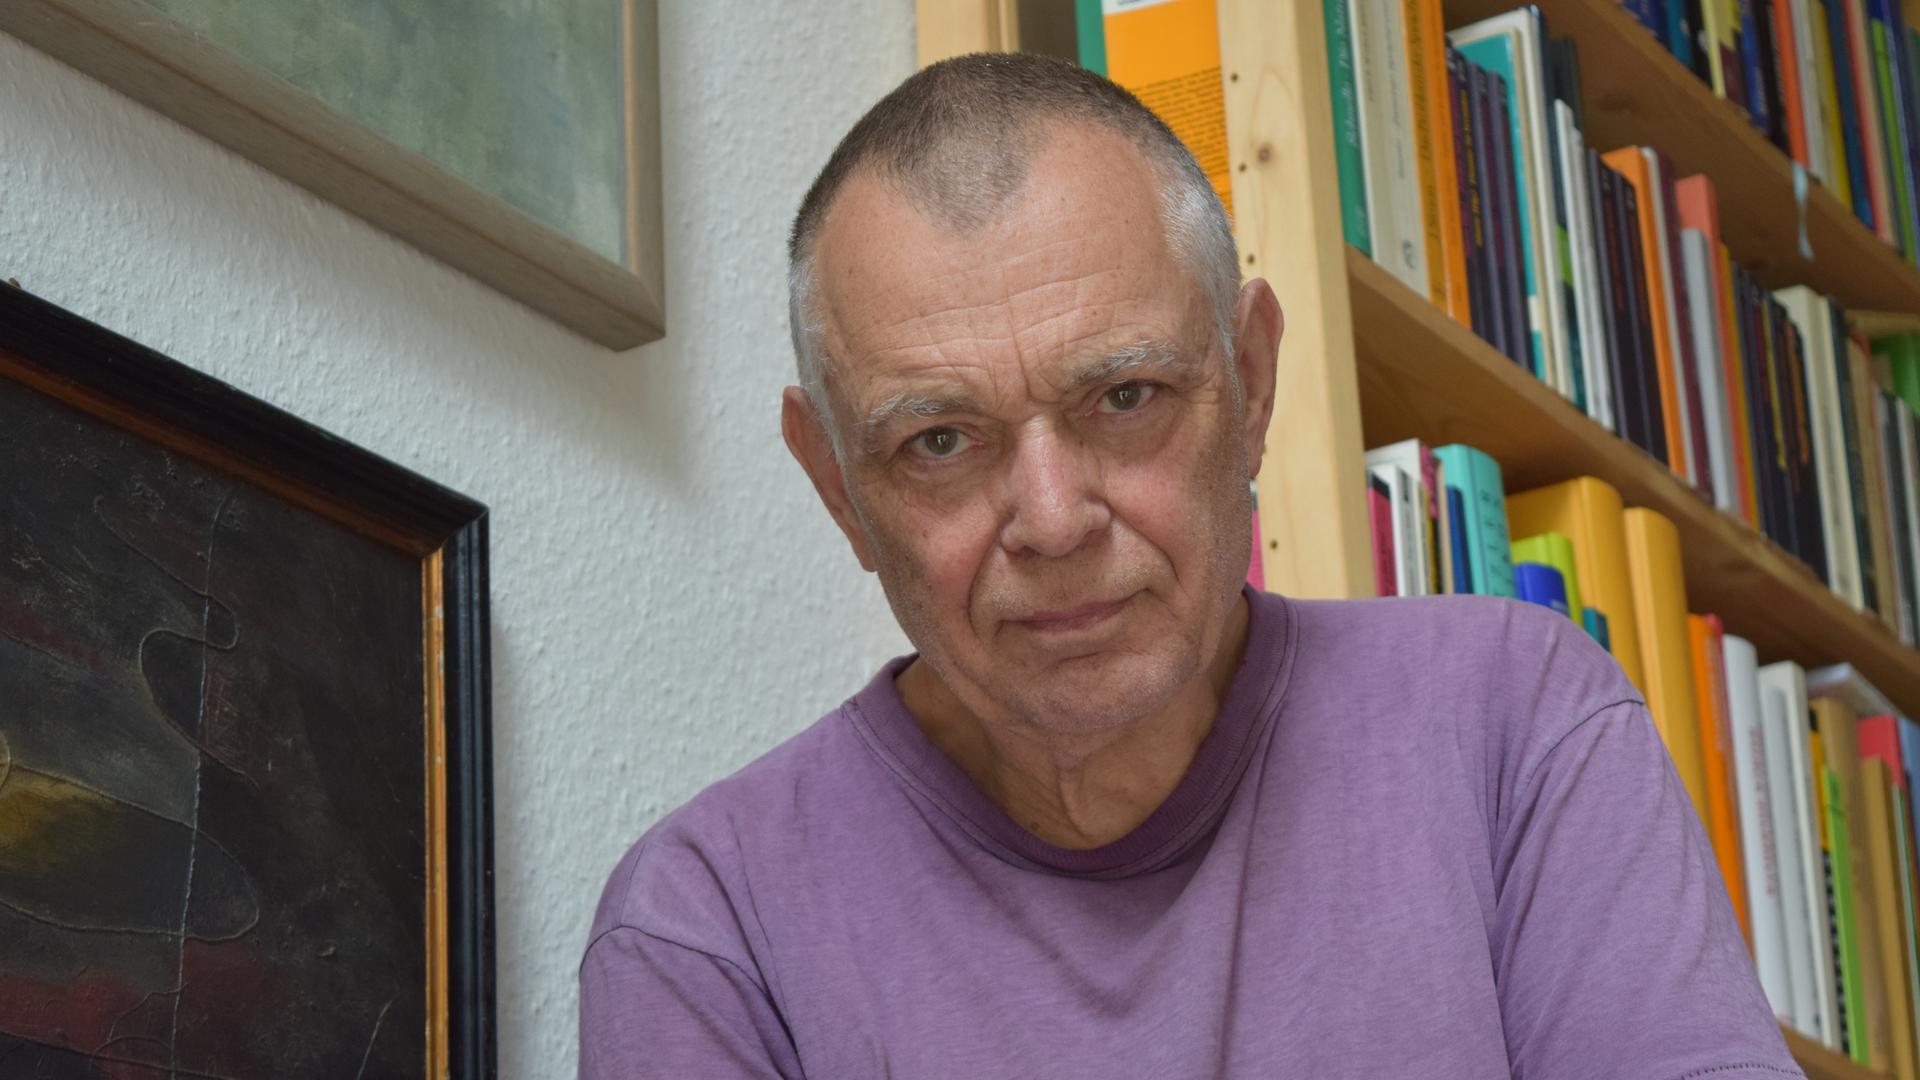 Der Komponist Mathias Spahlinger sitzt auf einer Treppe vor Bücherregalen und schaut in die Kamera